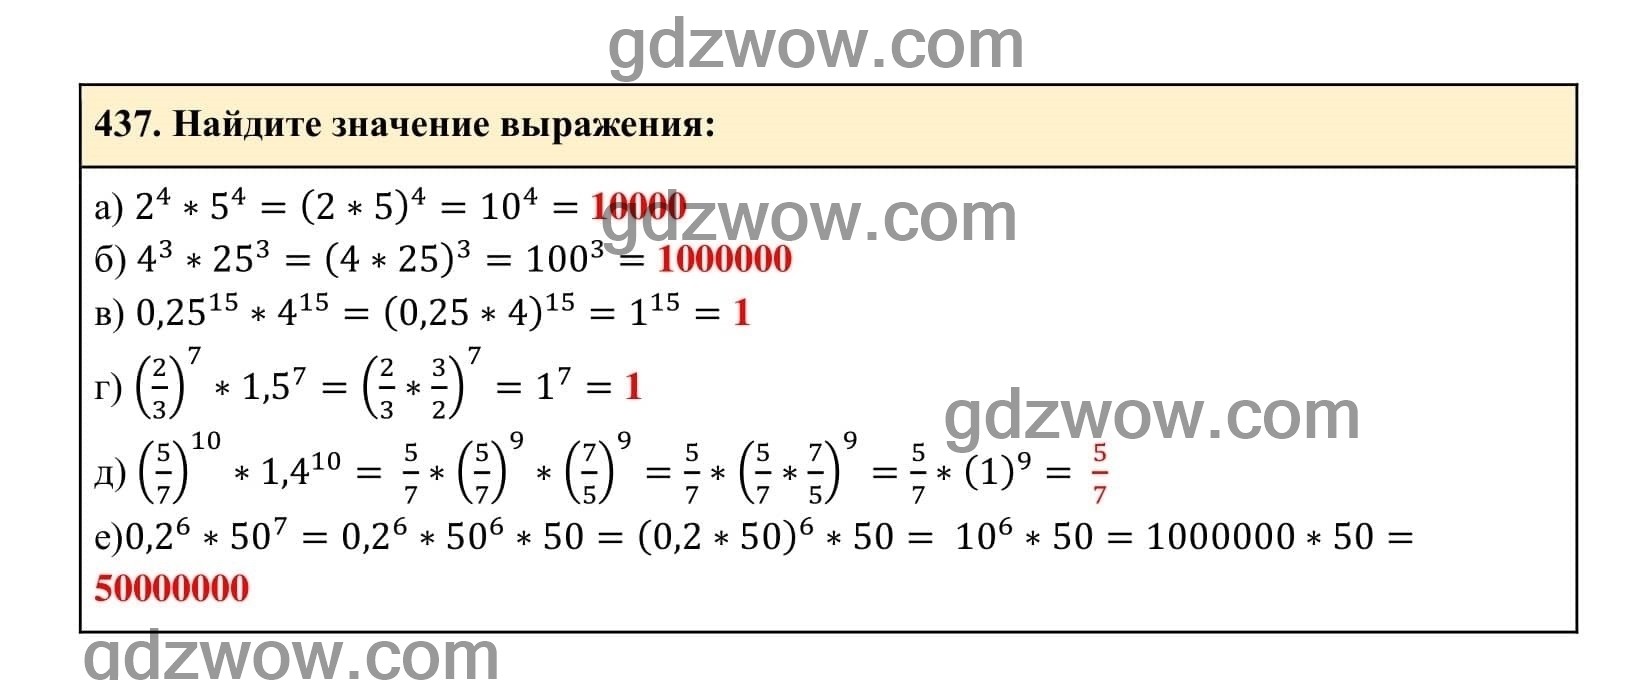 Упражнение 437 - ГДЗ по Алгебре 7 класс Учебник Макарычев (решебник) - GDZwow